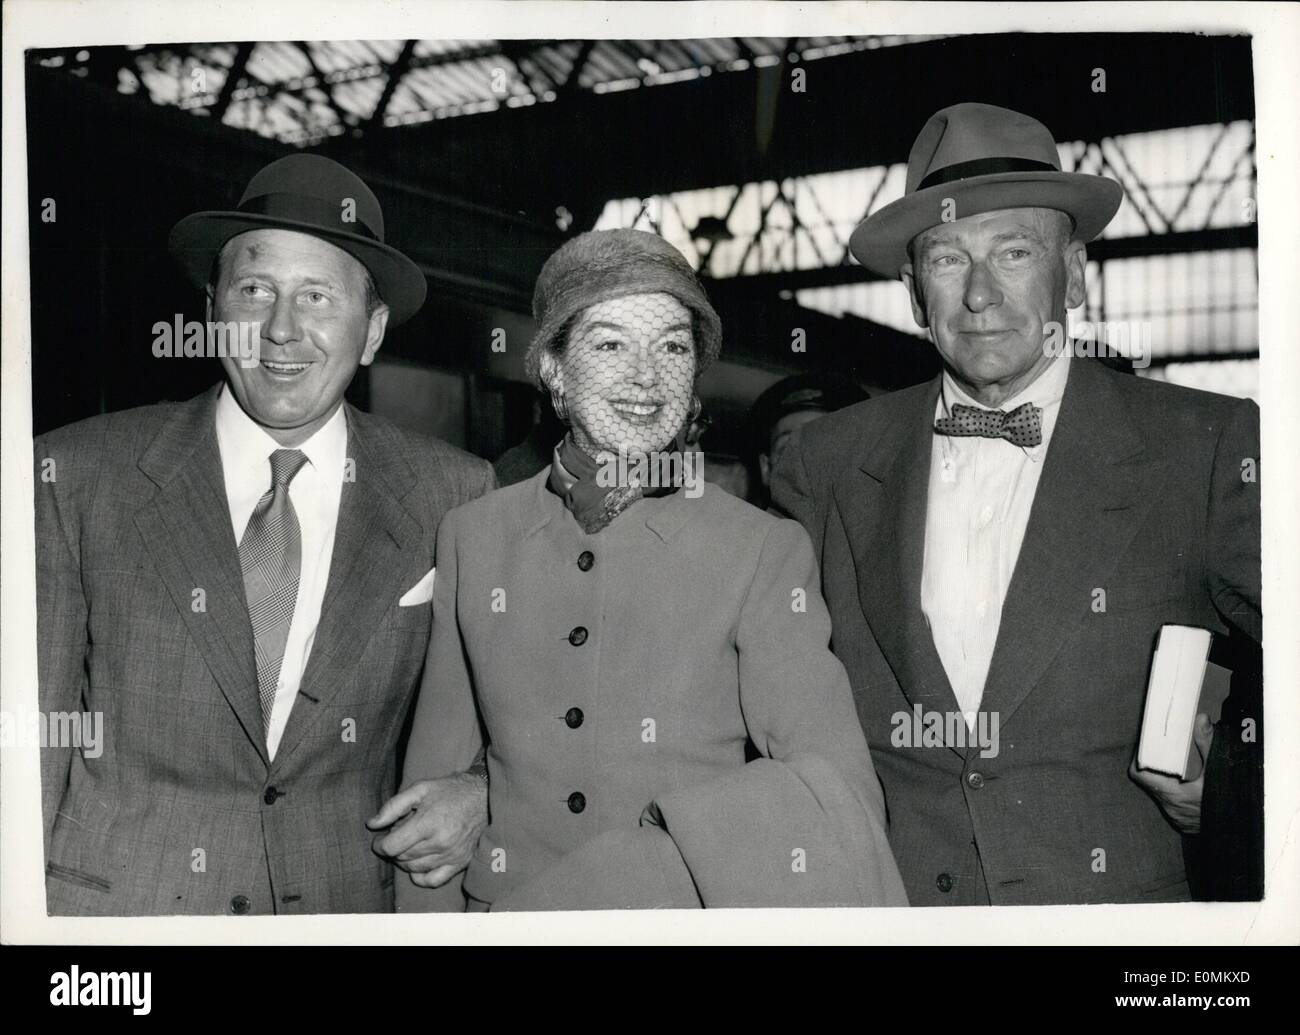 El 10 de octubre, 1955 - Rosalind Russell y su marido llega: estrella de cine popular Rosalind Russell llegaron a Waterloo esta mañana en el Foto de stock